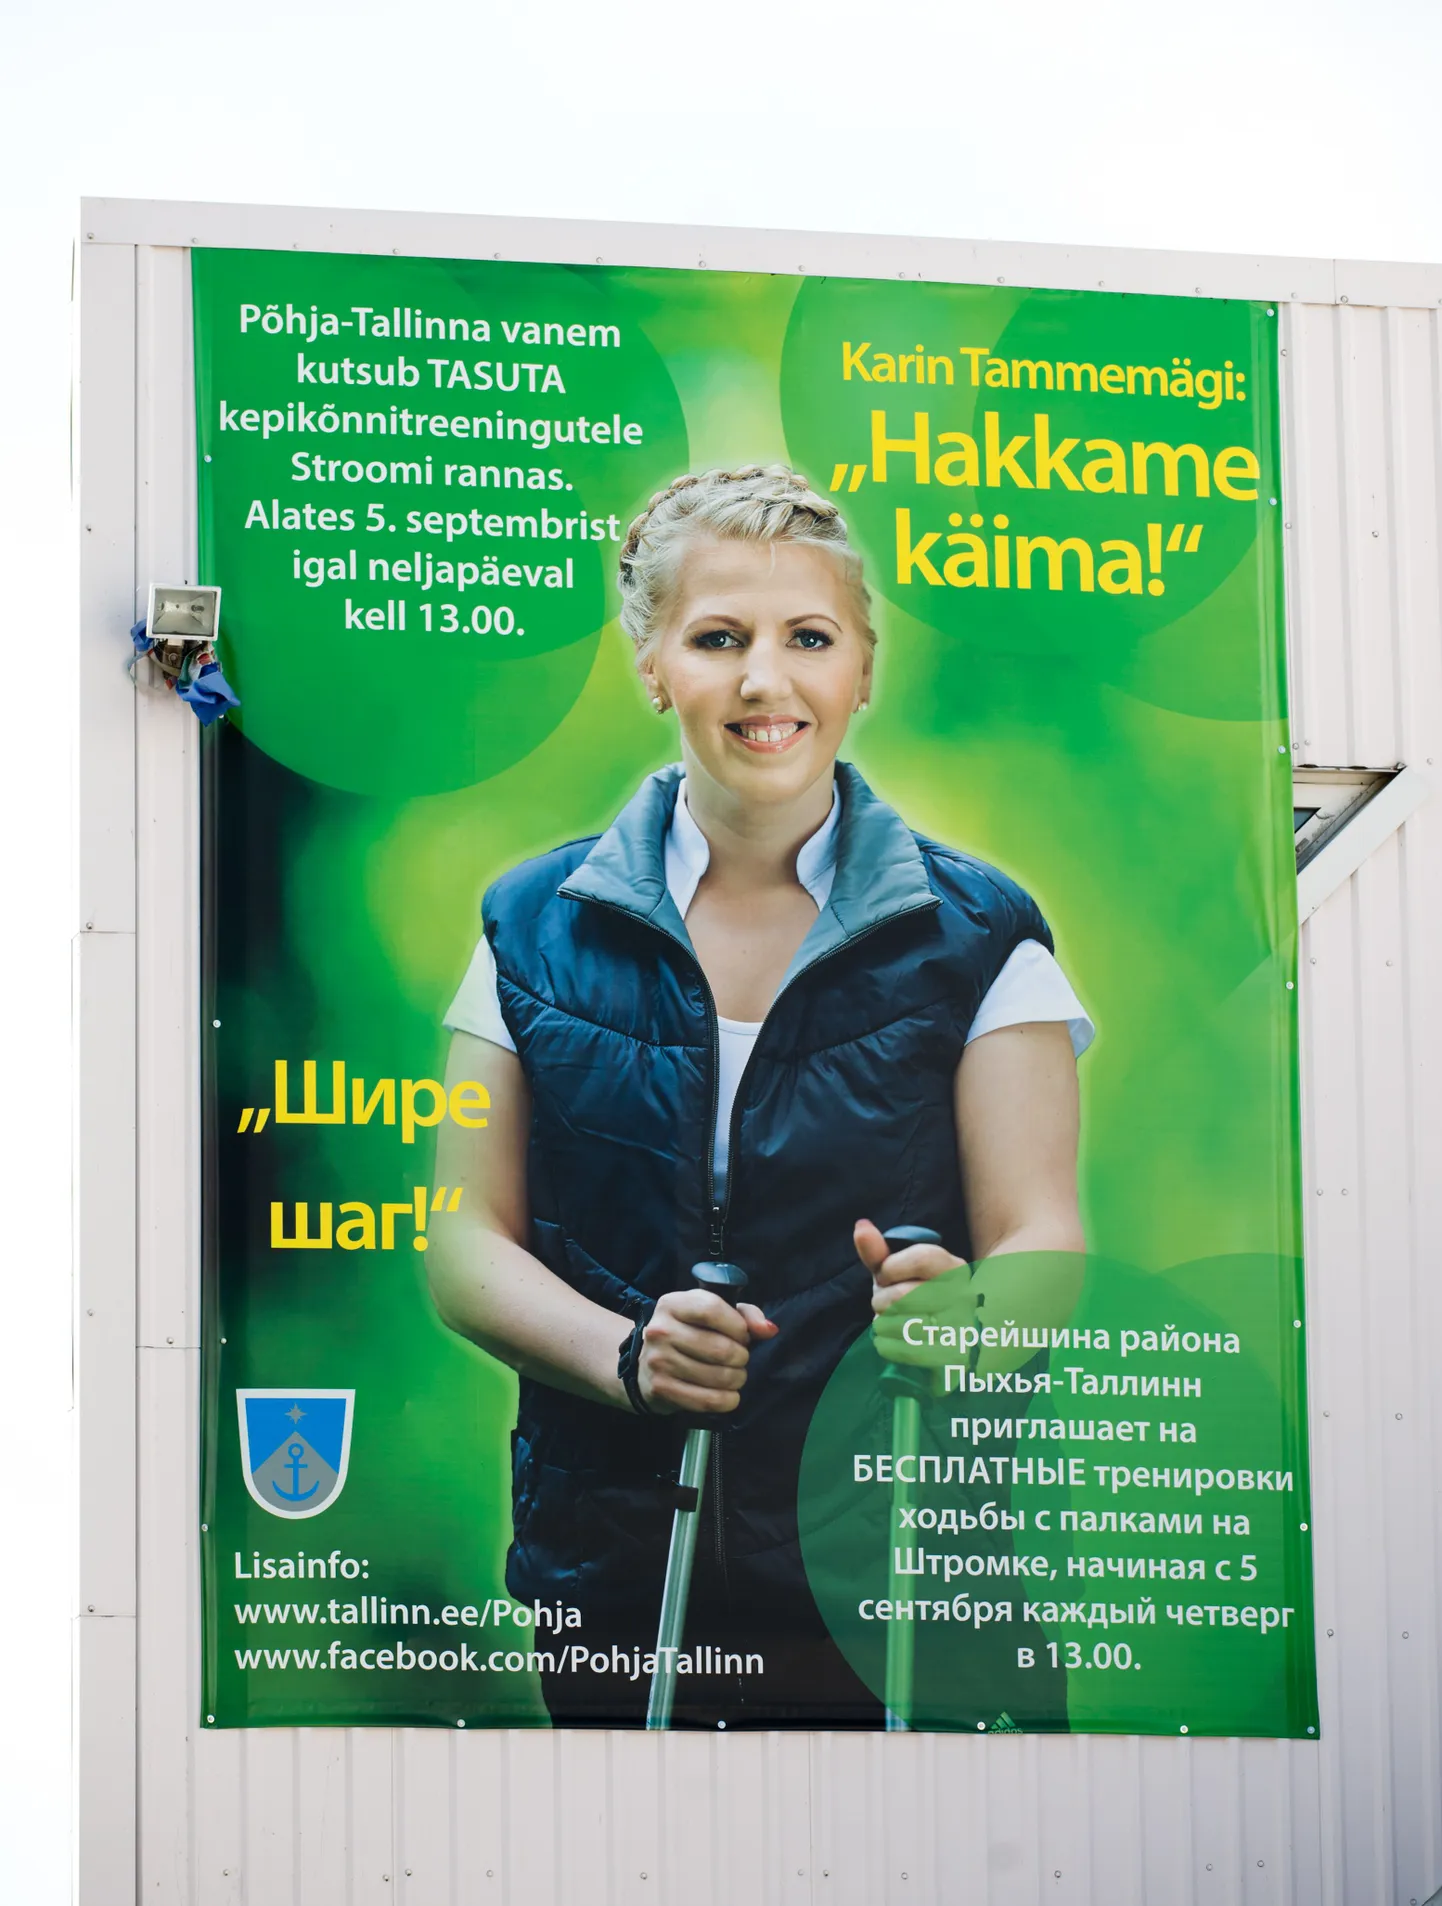 За несколько месяцев до выборов в местные самоуправления в Пыхья-Таллинне появились большие плакаты с портретами старейшины части города Карин Таммемяги и ее заместителя Прийта Кутсера.